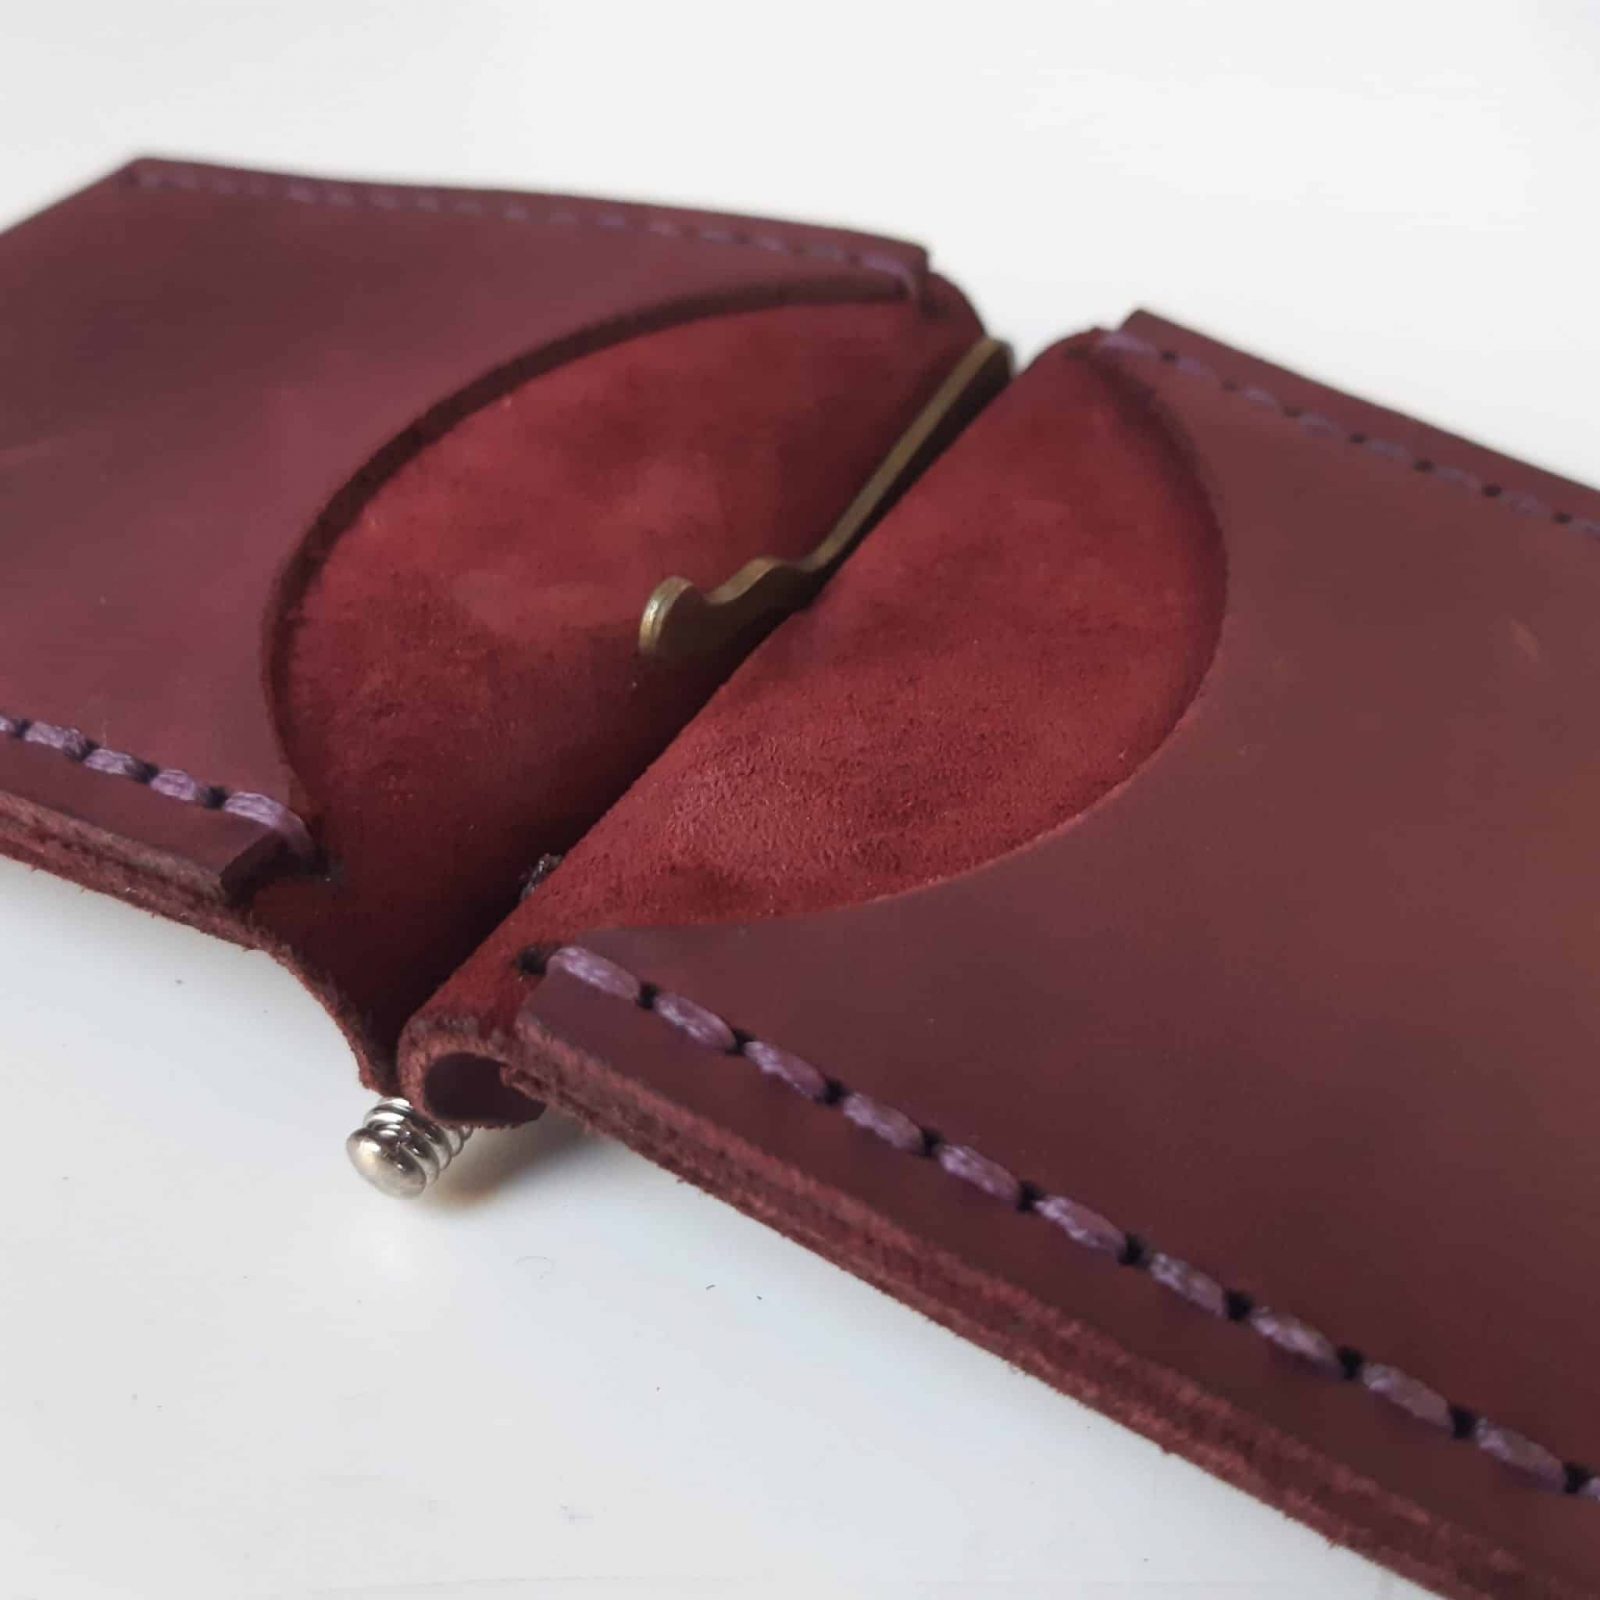 Lot - Louis Quatorze Men's Leather Money Clip/Wallet